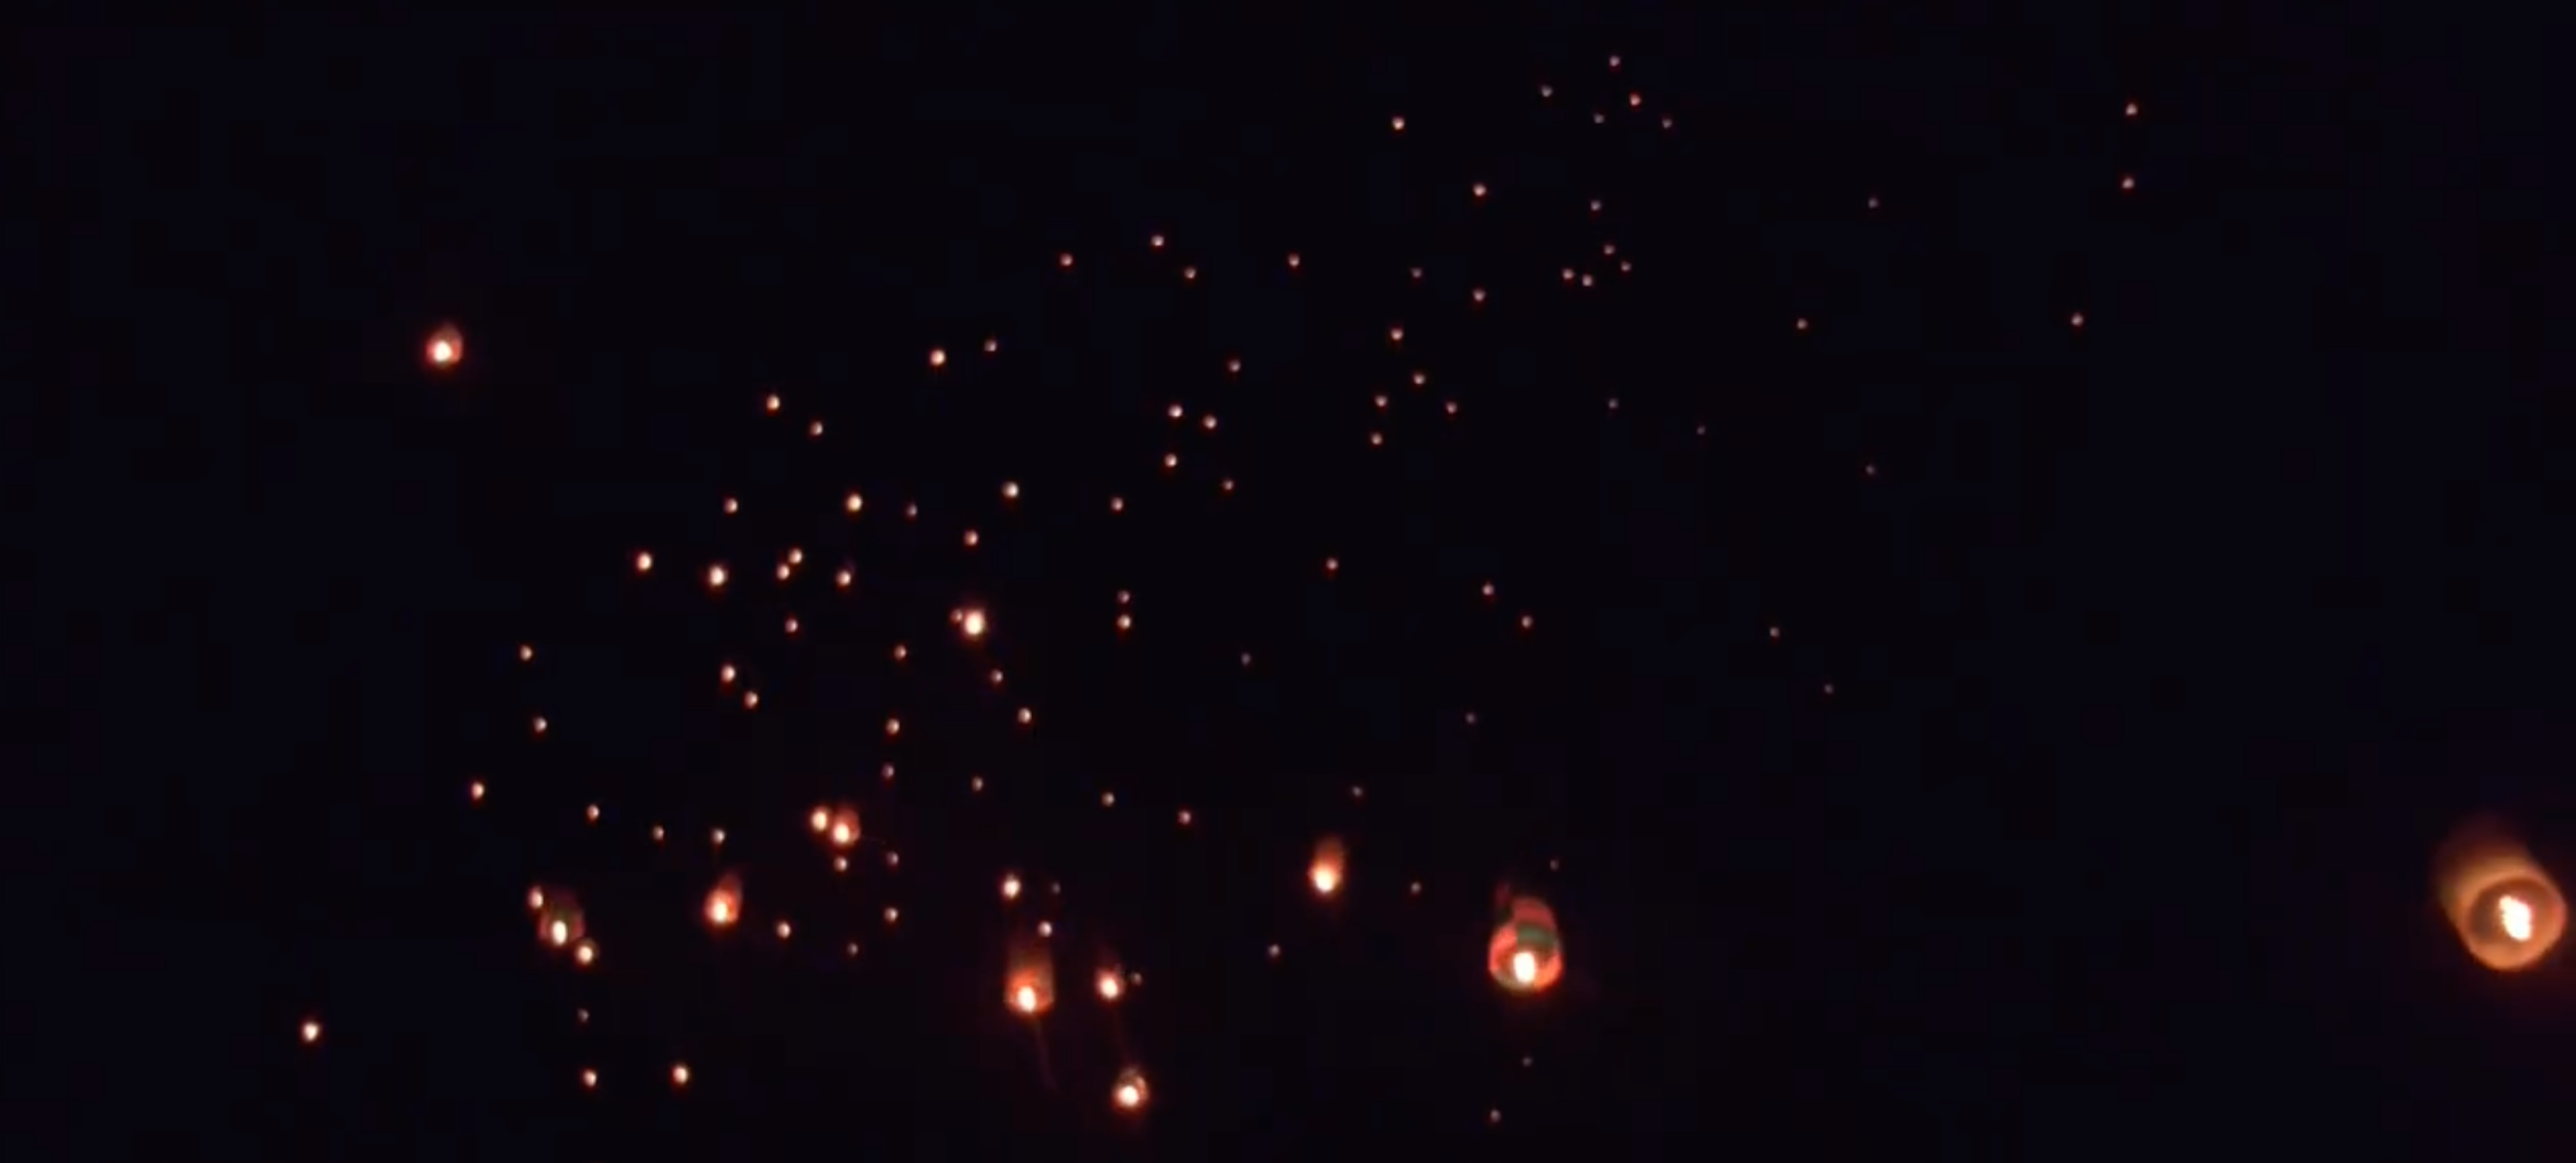 Λεωνίδιο: Φαντασμαγορικό θέαμα με φωτεινά αερόστατα το βράδυ της Ανάστασης